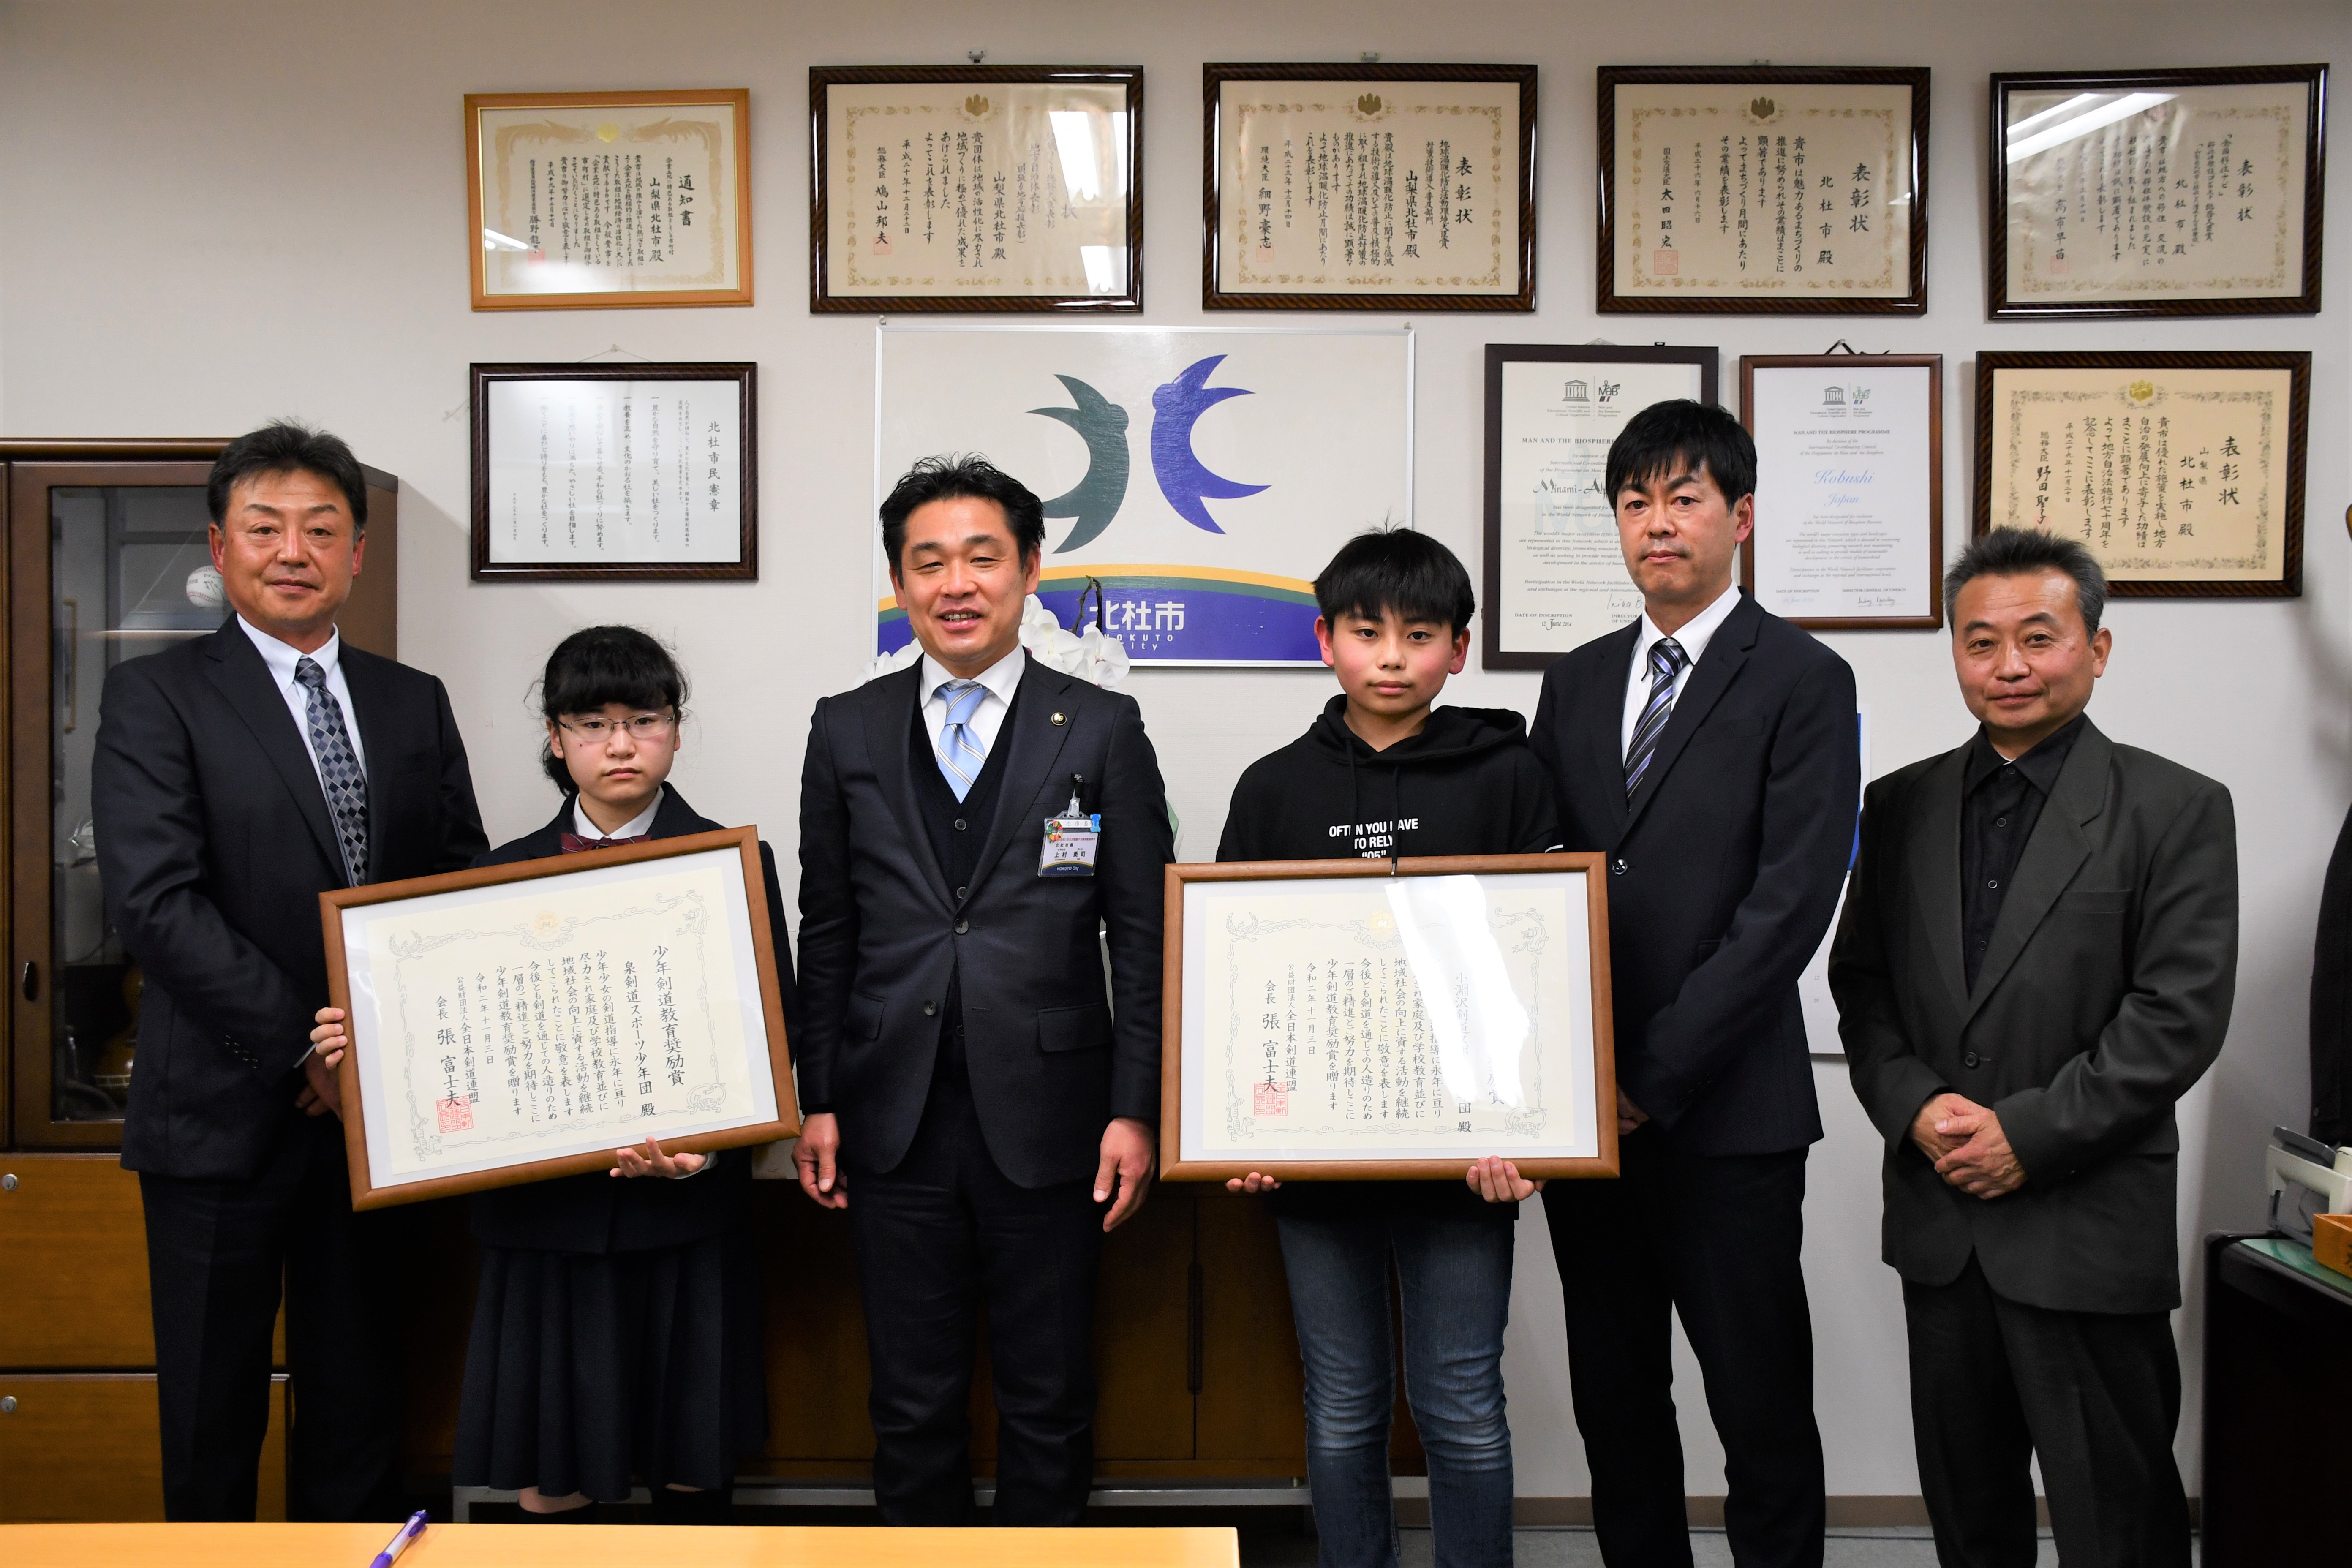 【令和3年1月25日】「少年剣道教育奨励賞」受賞が報告されました